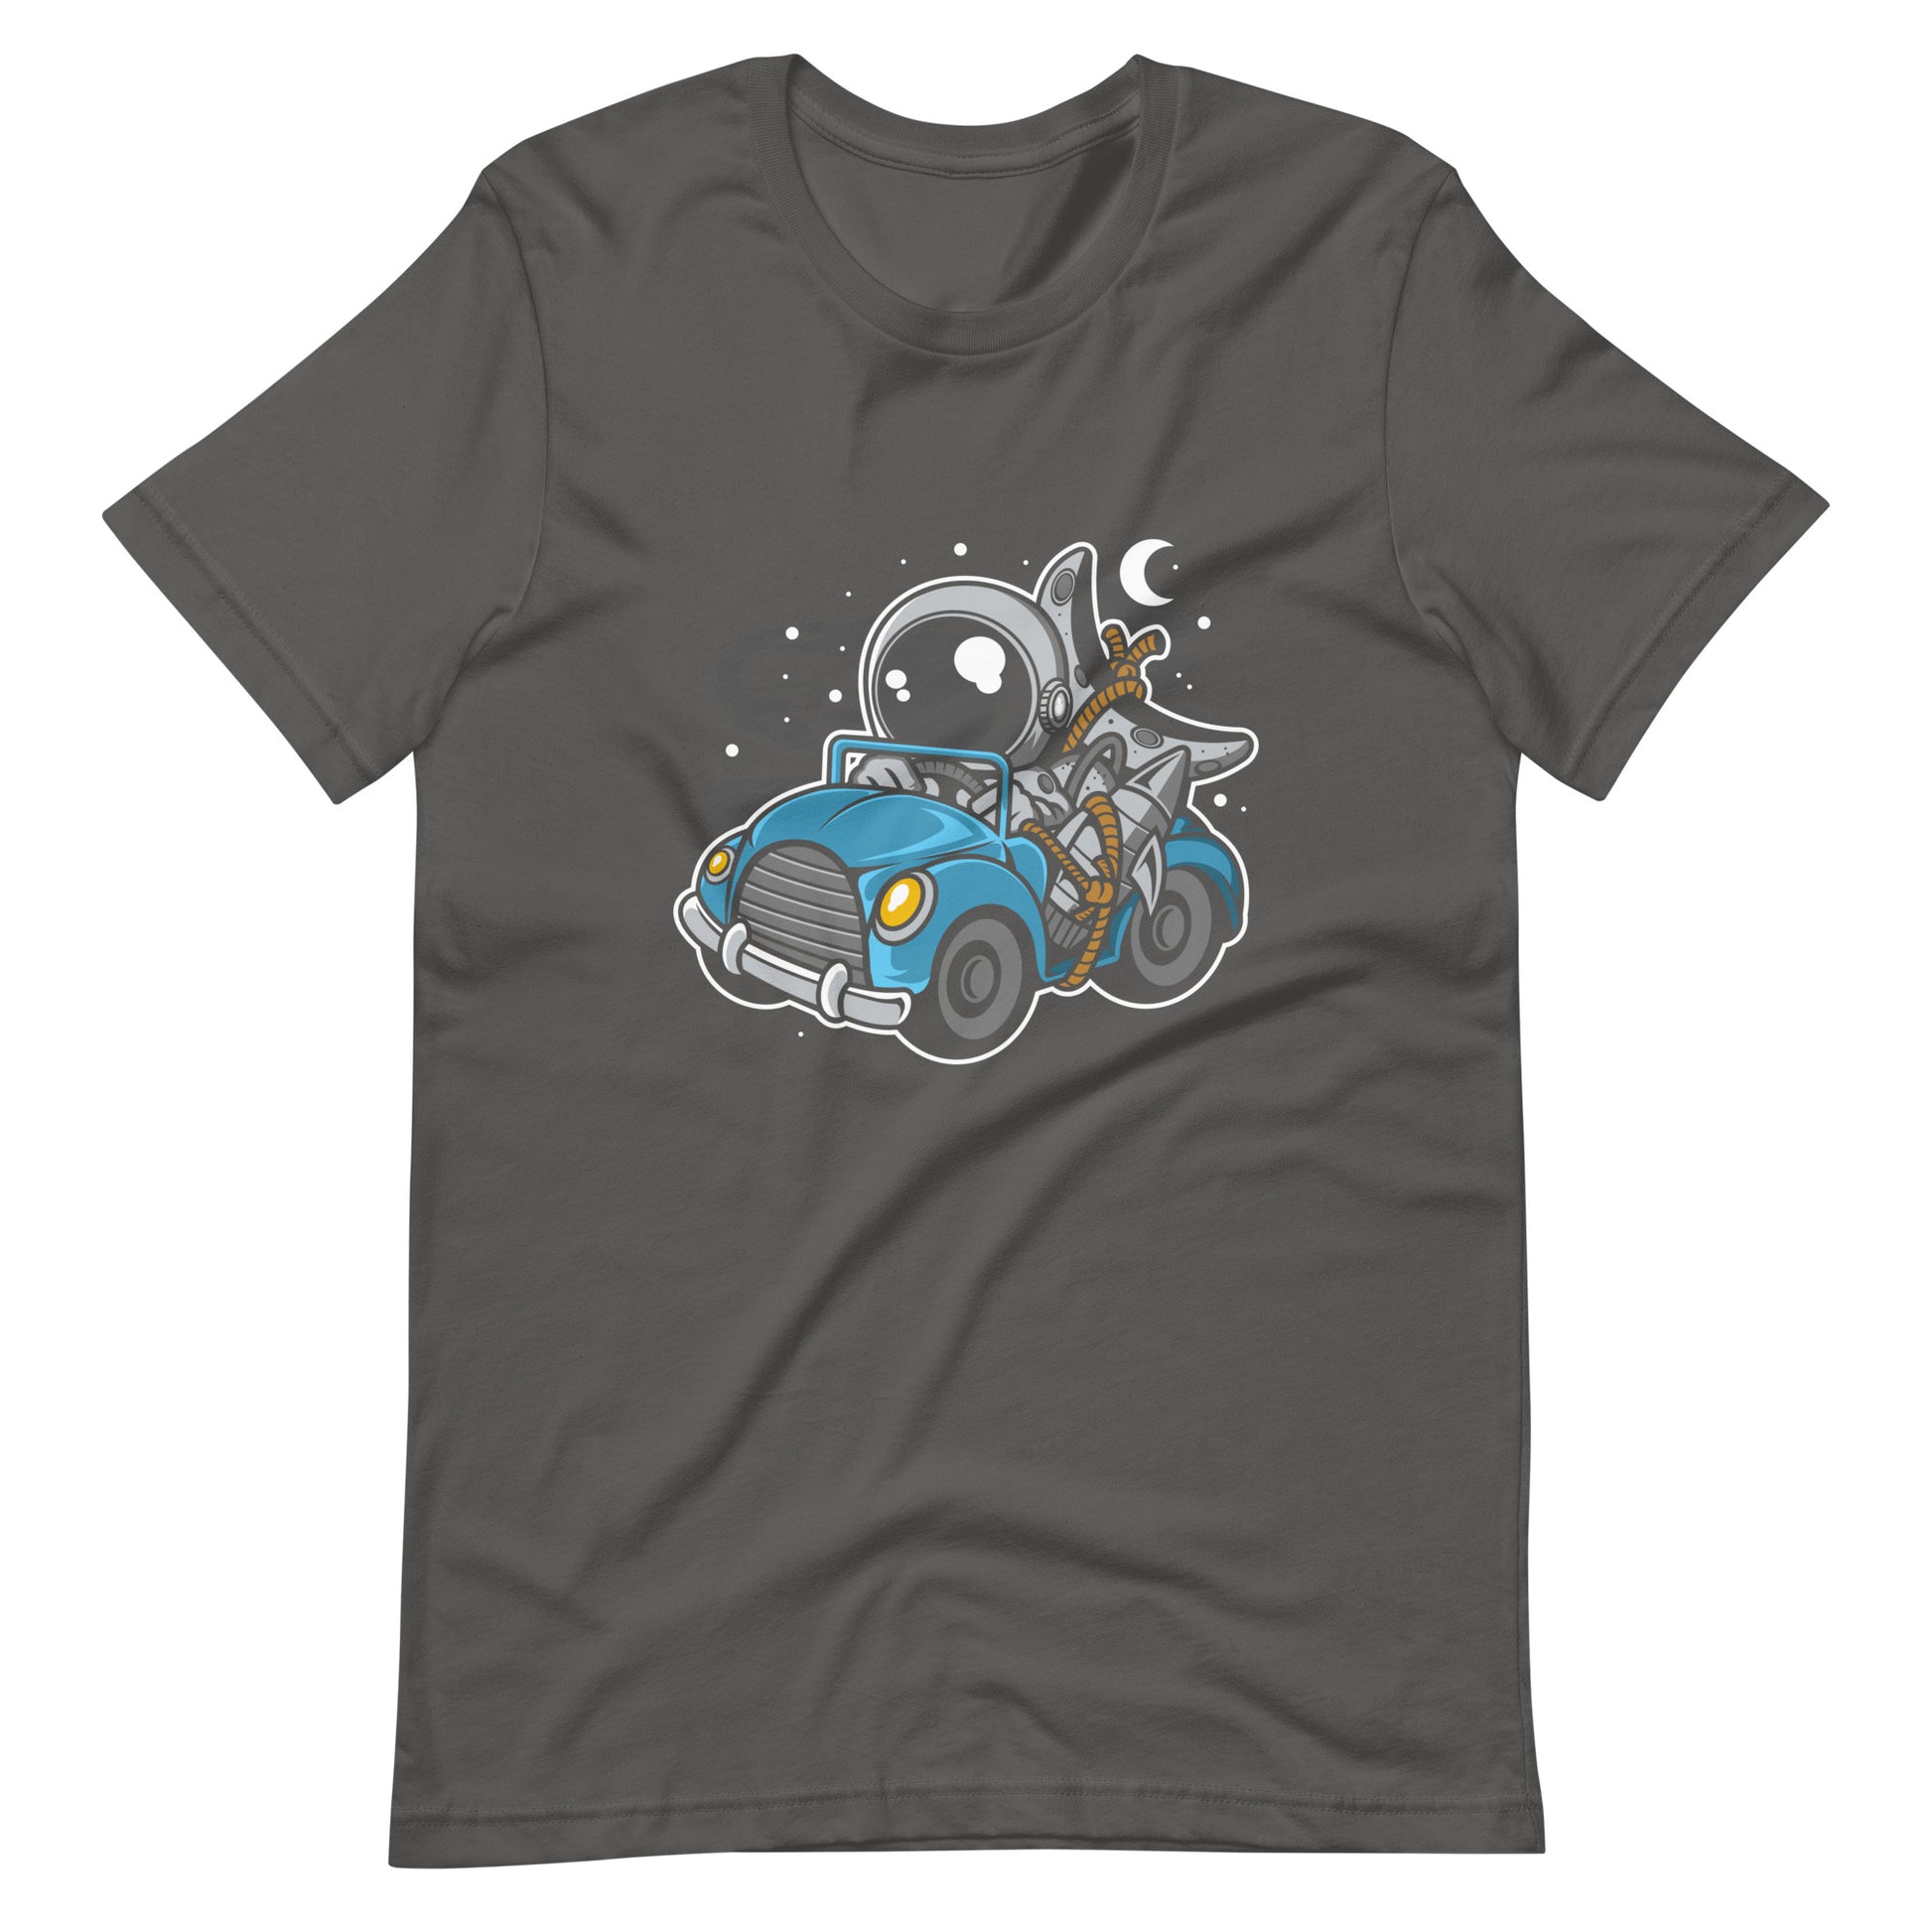 Astronaut Journey - Men's t-shirt - Asphalt Front